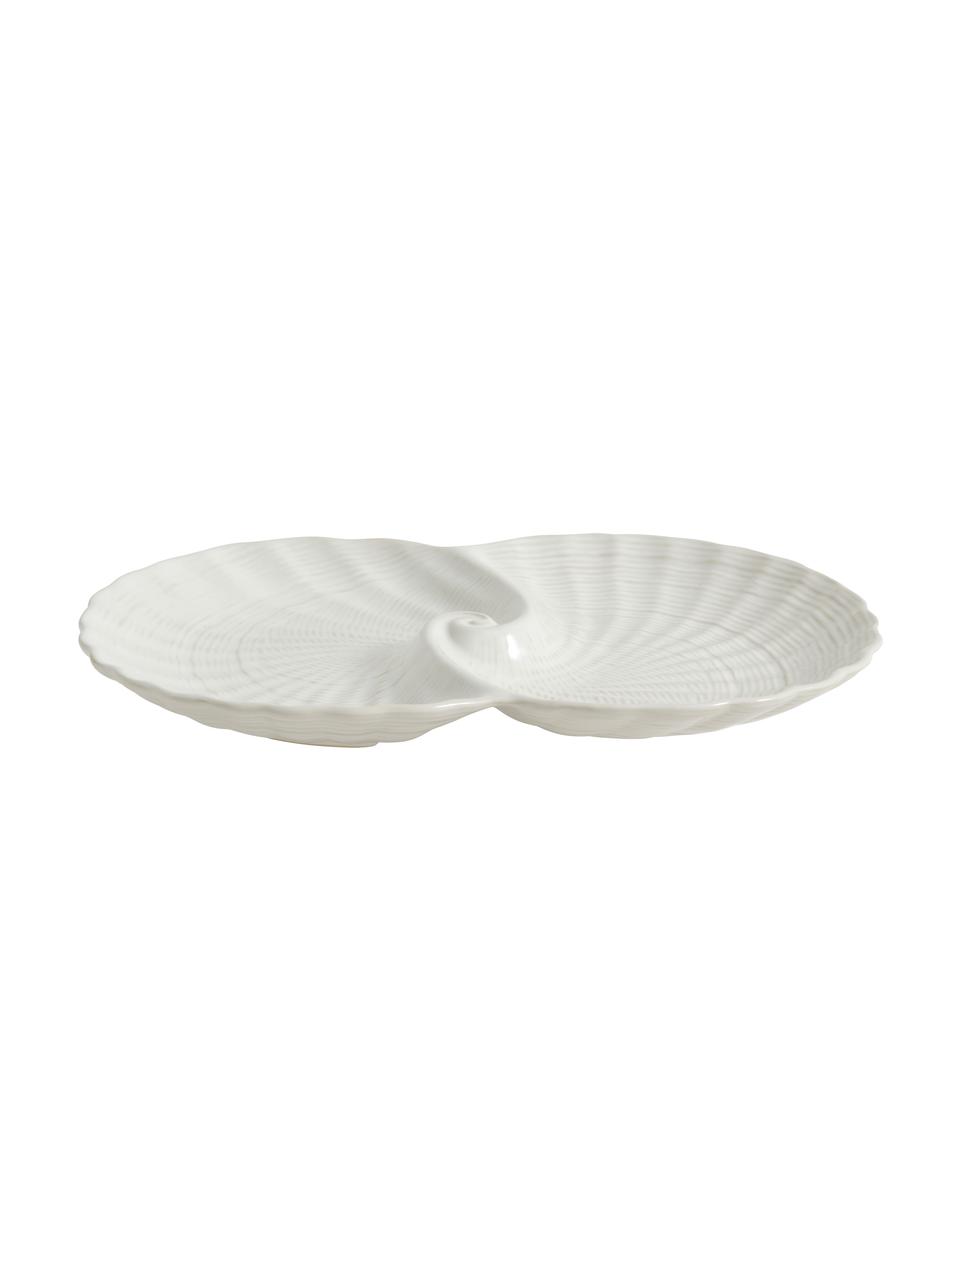 Deko-Schale Gullfoss, Keramik, Weiß, B 30 x T 20 cm